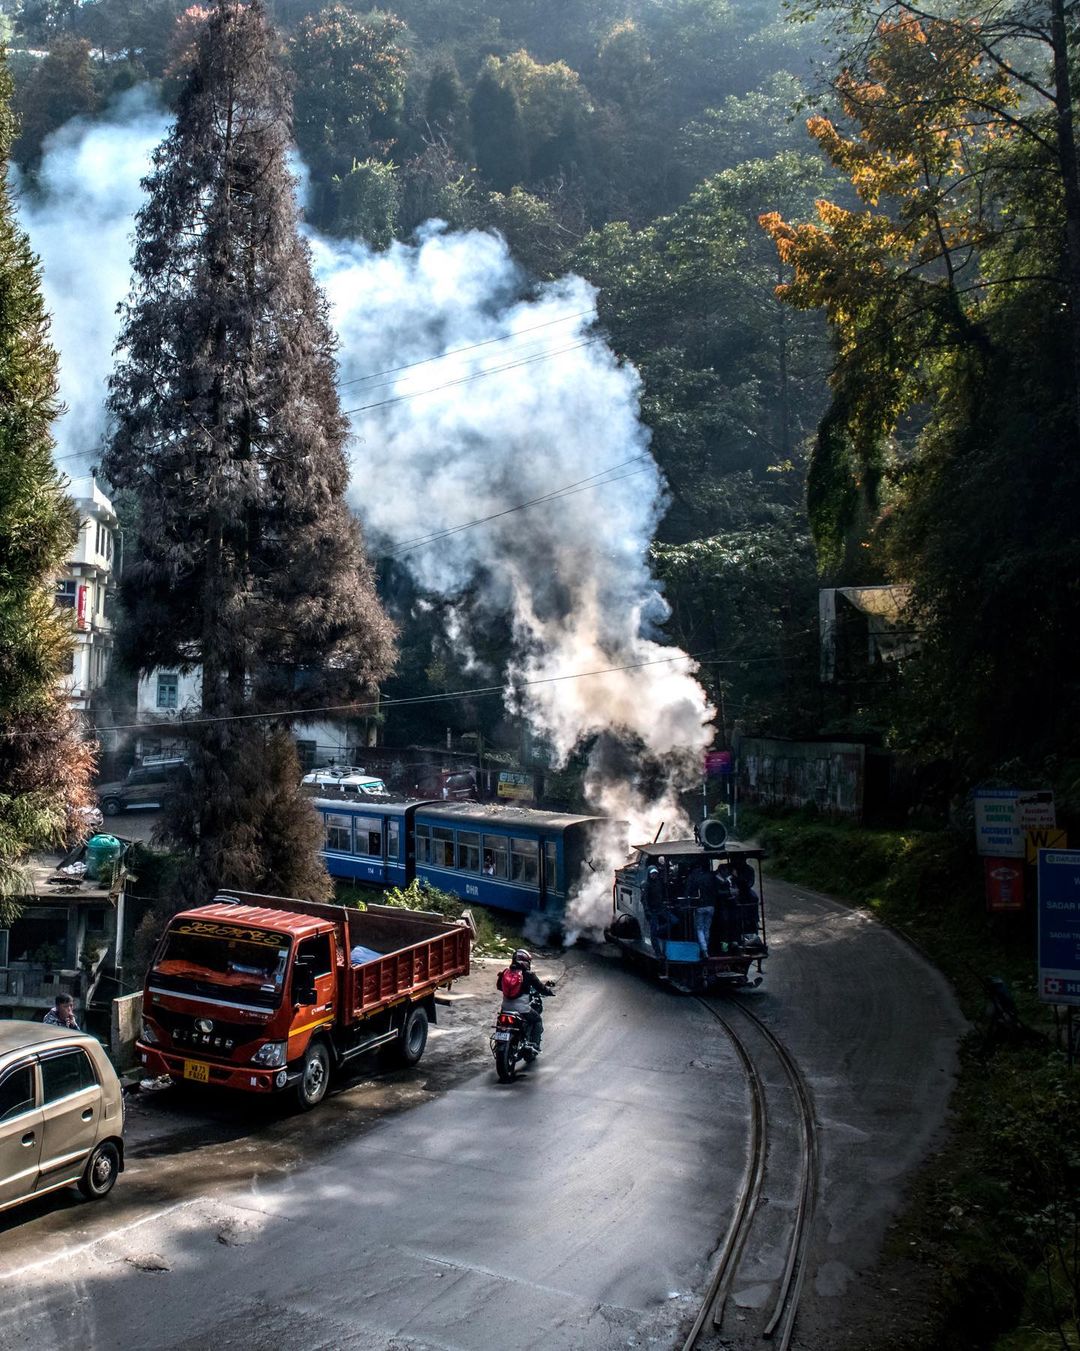 Best Time To Visit Darjeeling